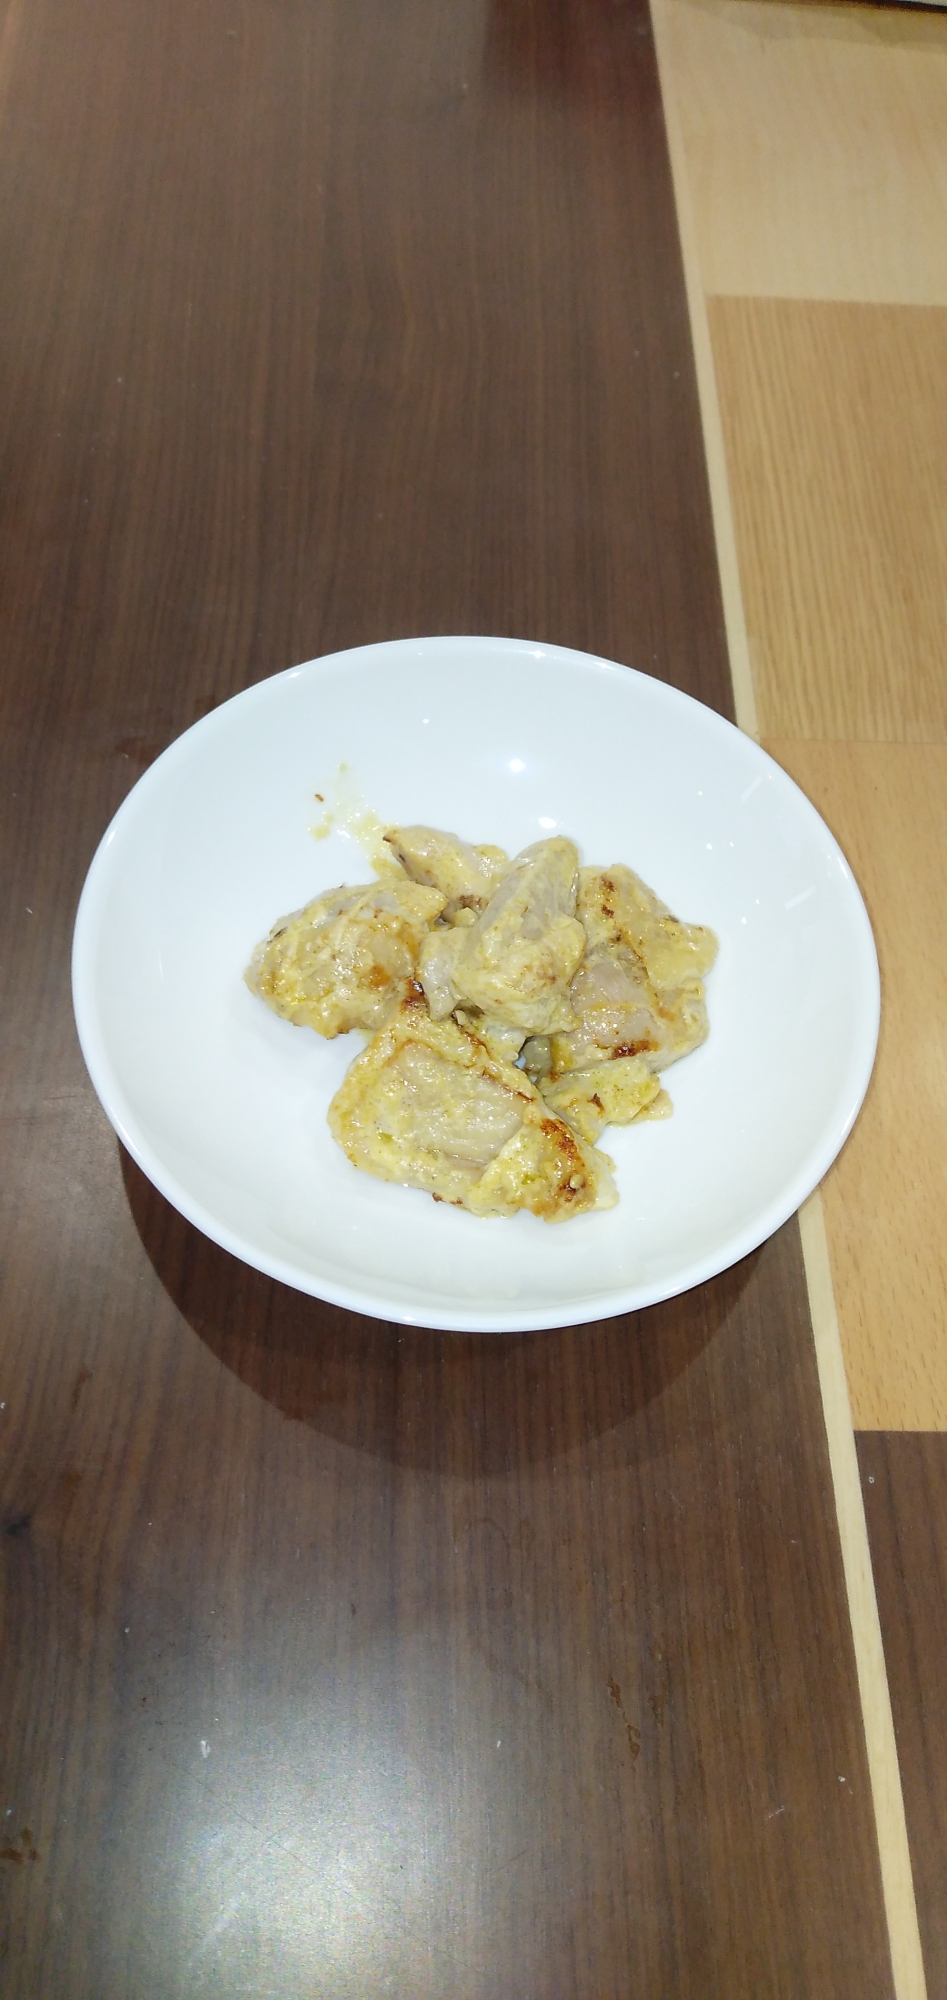 鶏肉の味噌マヨ焼き